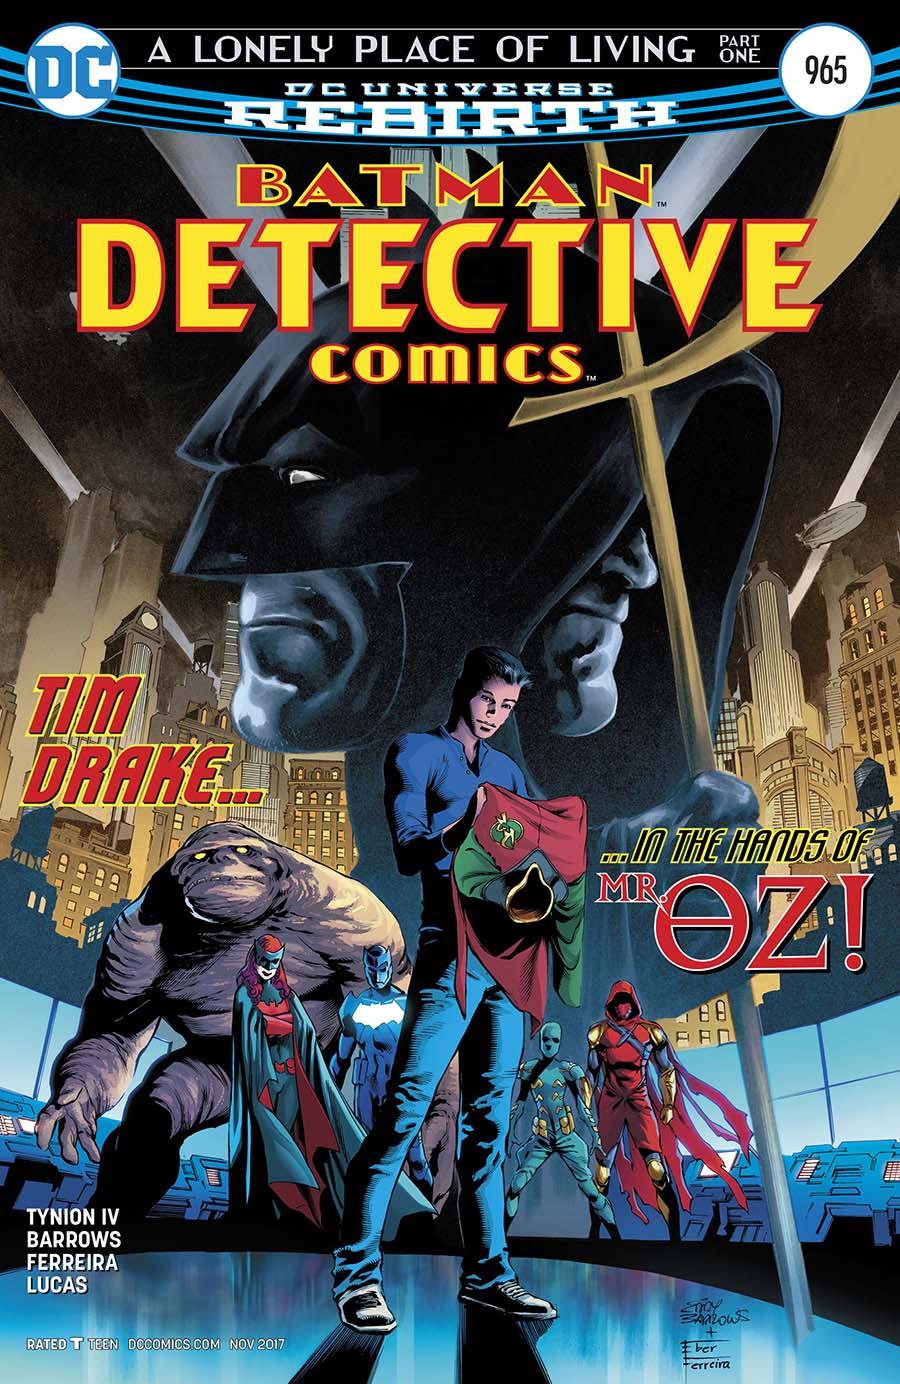 Detective Comics Vol. 2 #965